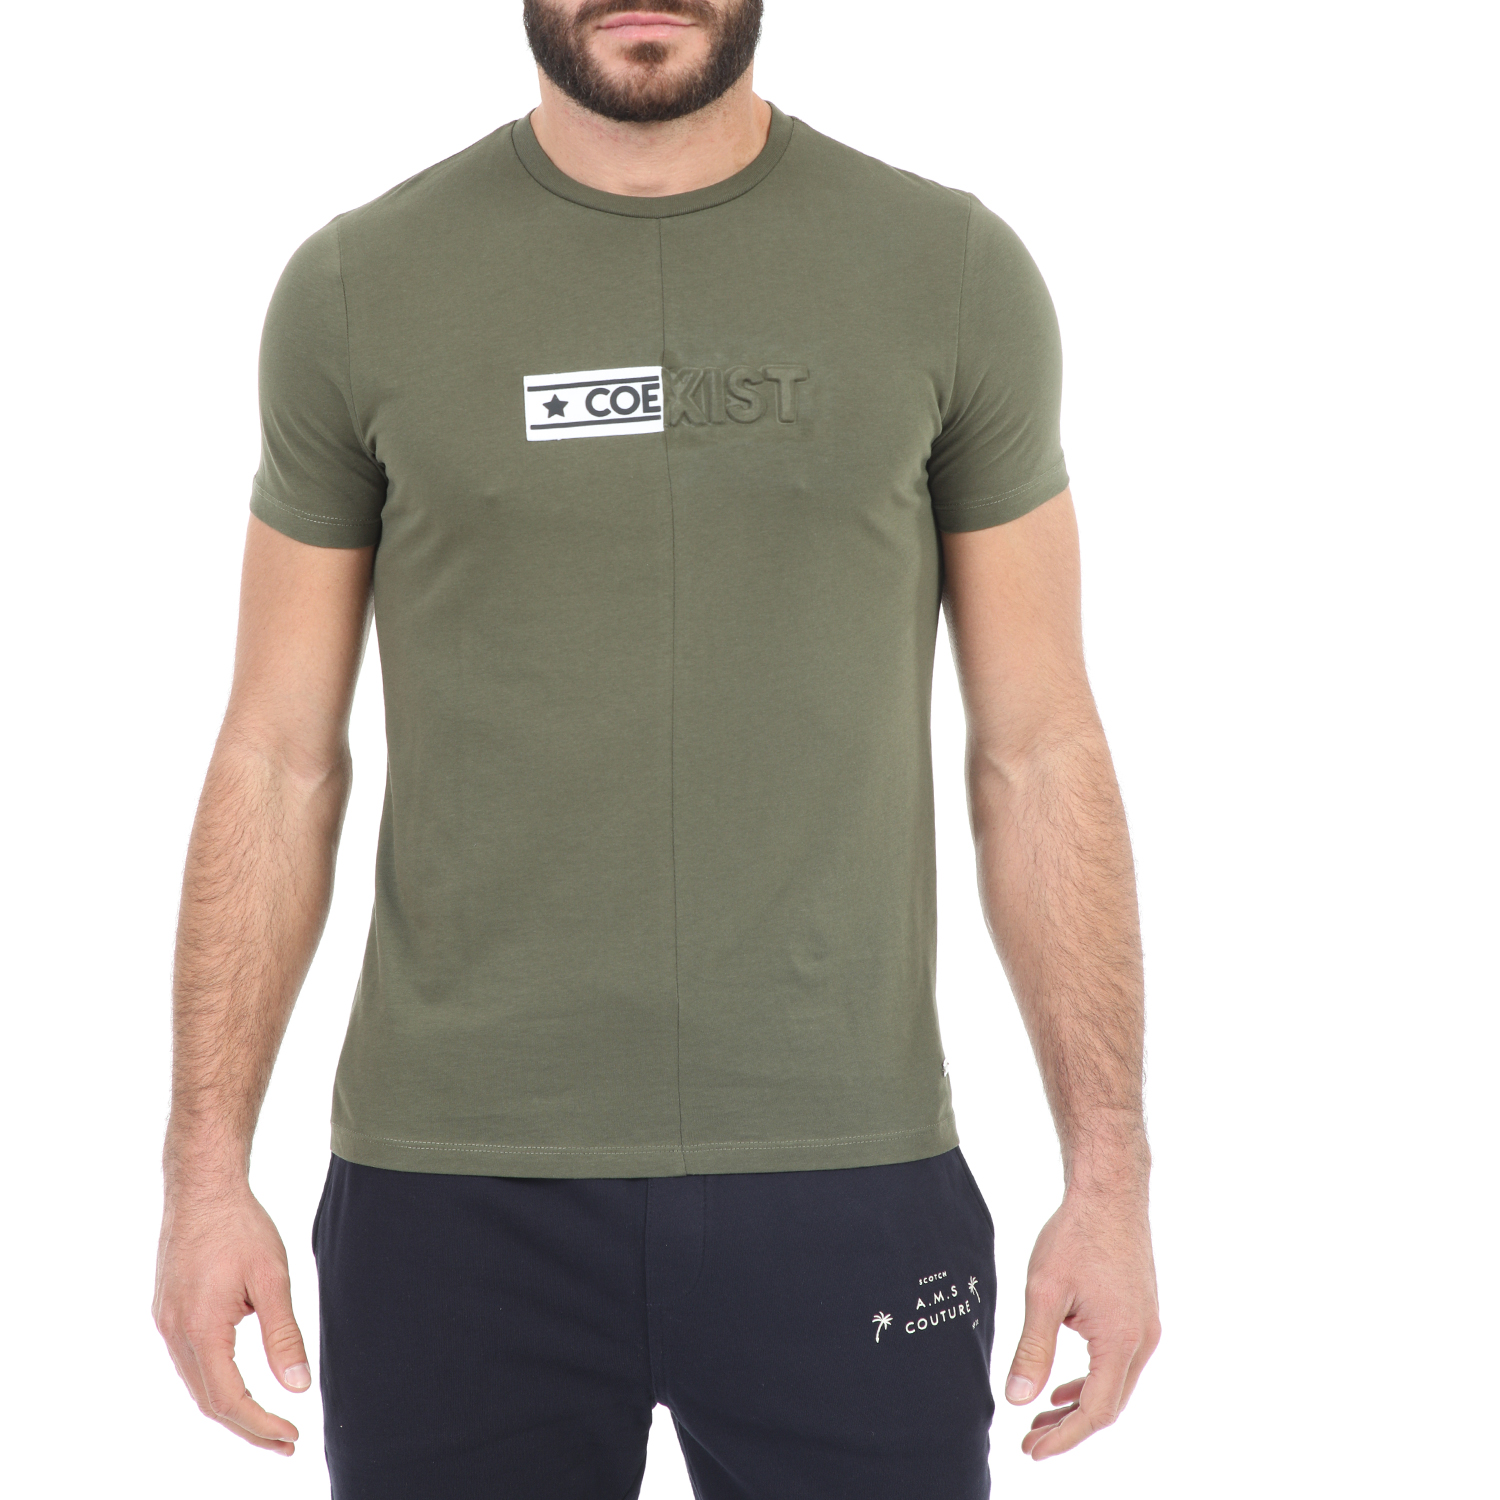 Ανδρικά/Ρούχα/Μπλούζες/Κοντομάνικες SSEINSE - Ανδρικό t-shirt SSEINSE χακί